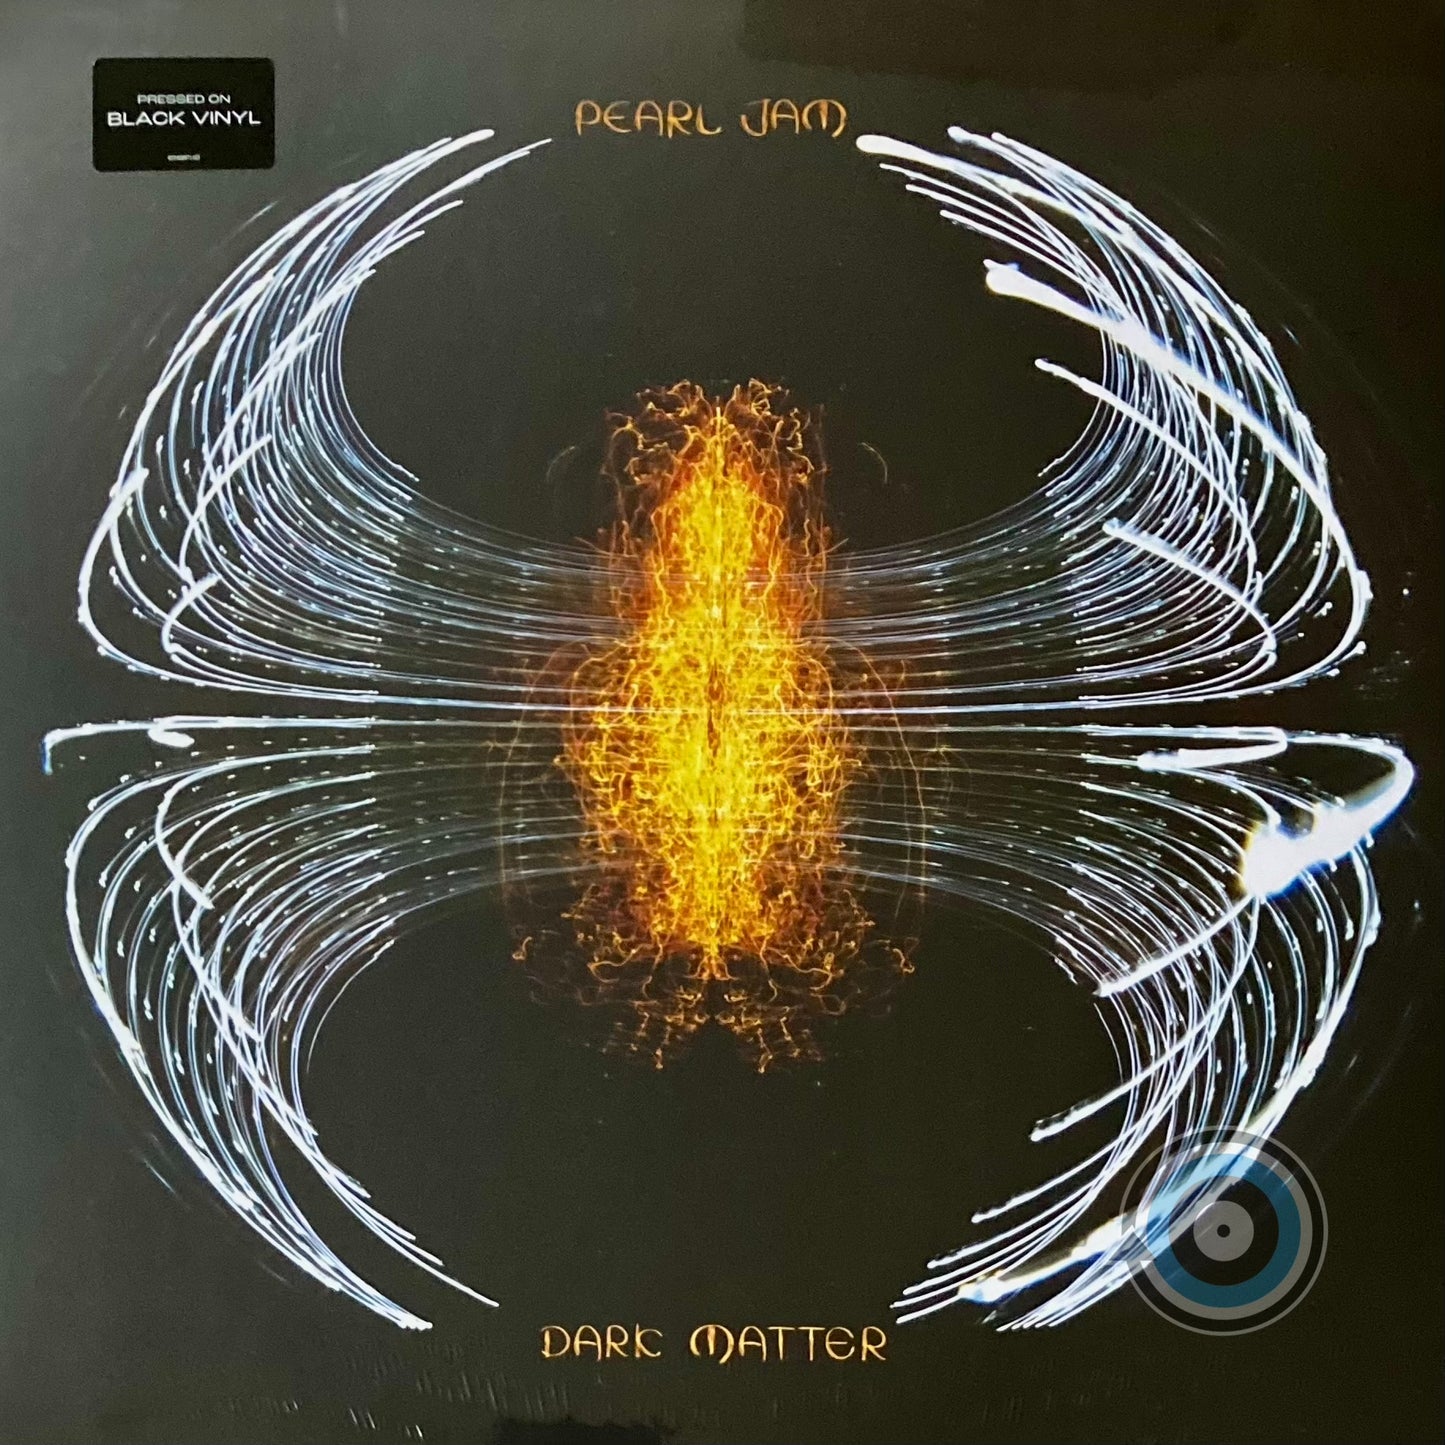 Pearl Jam - Dark Matter LP (Sealed)